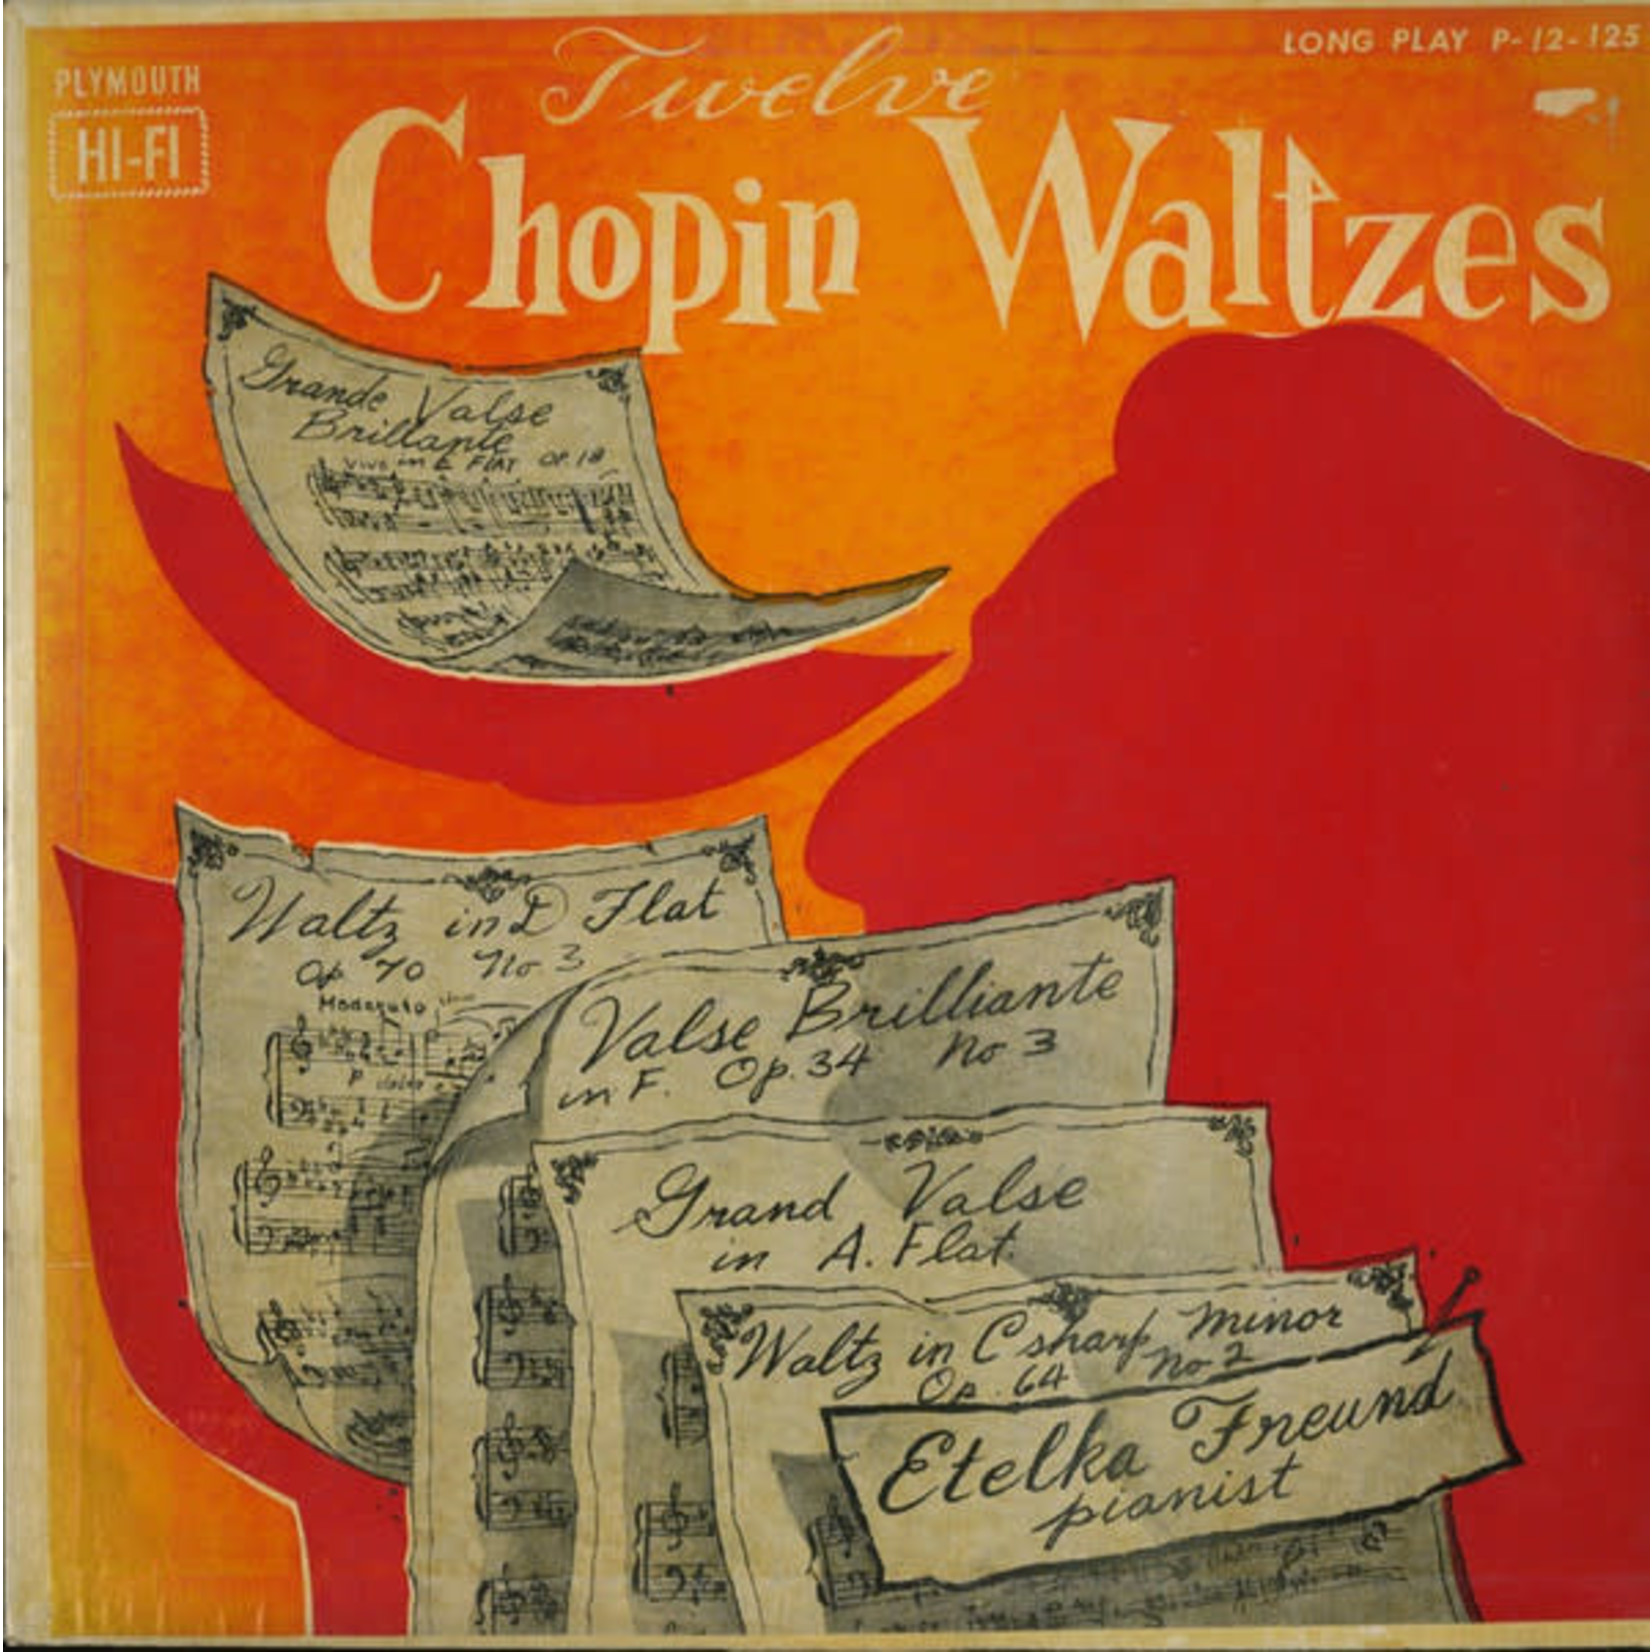 Chopin Chopin* : Etelka Freund – Twelve Chopin Waltzes (VG)